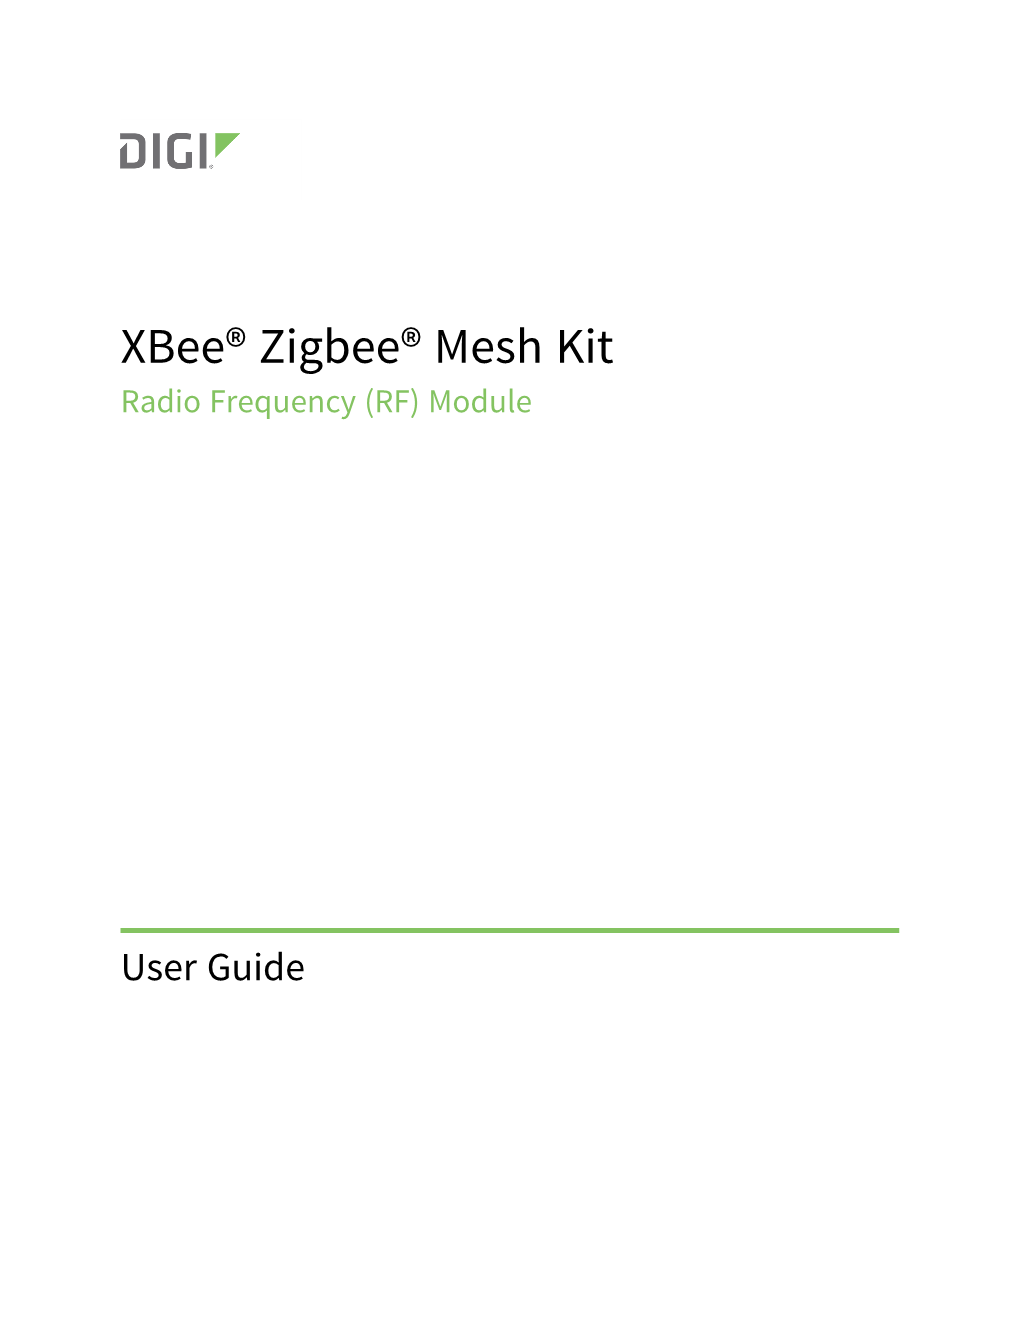 Xbee Zigbee Mesh Kit User Guide